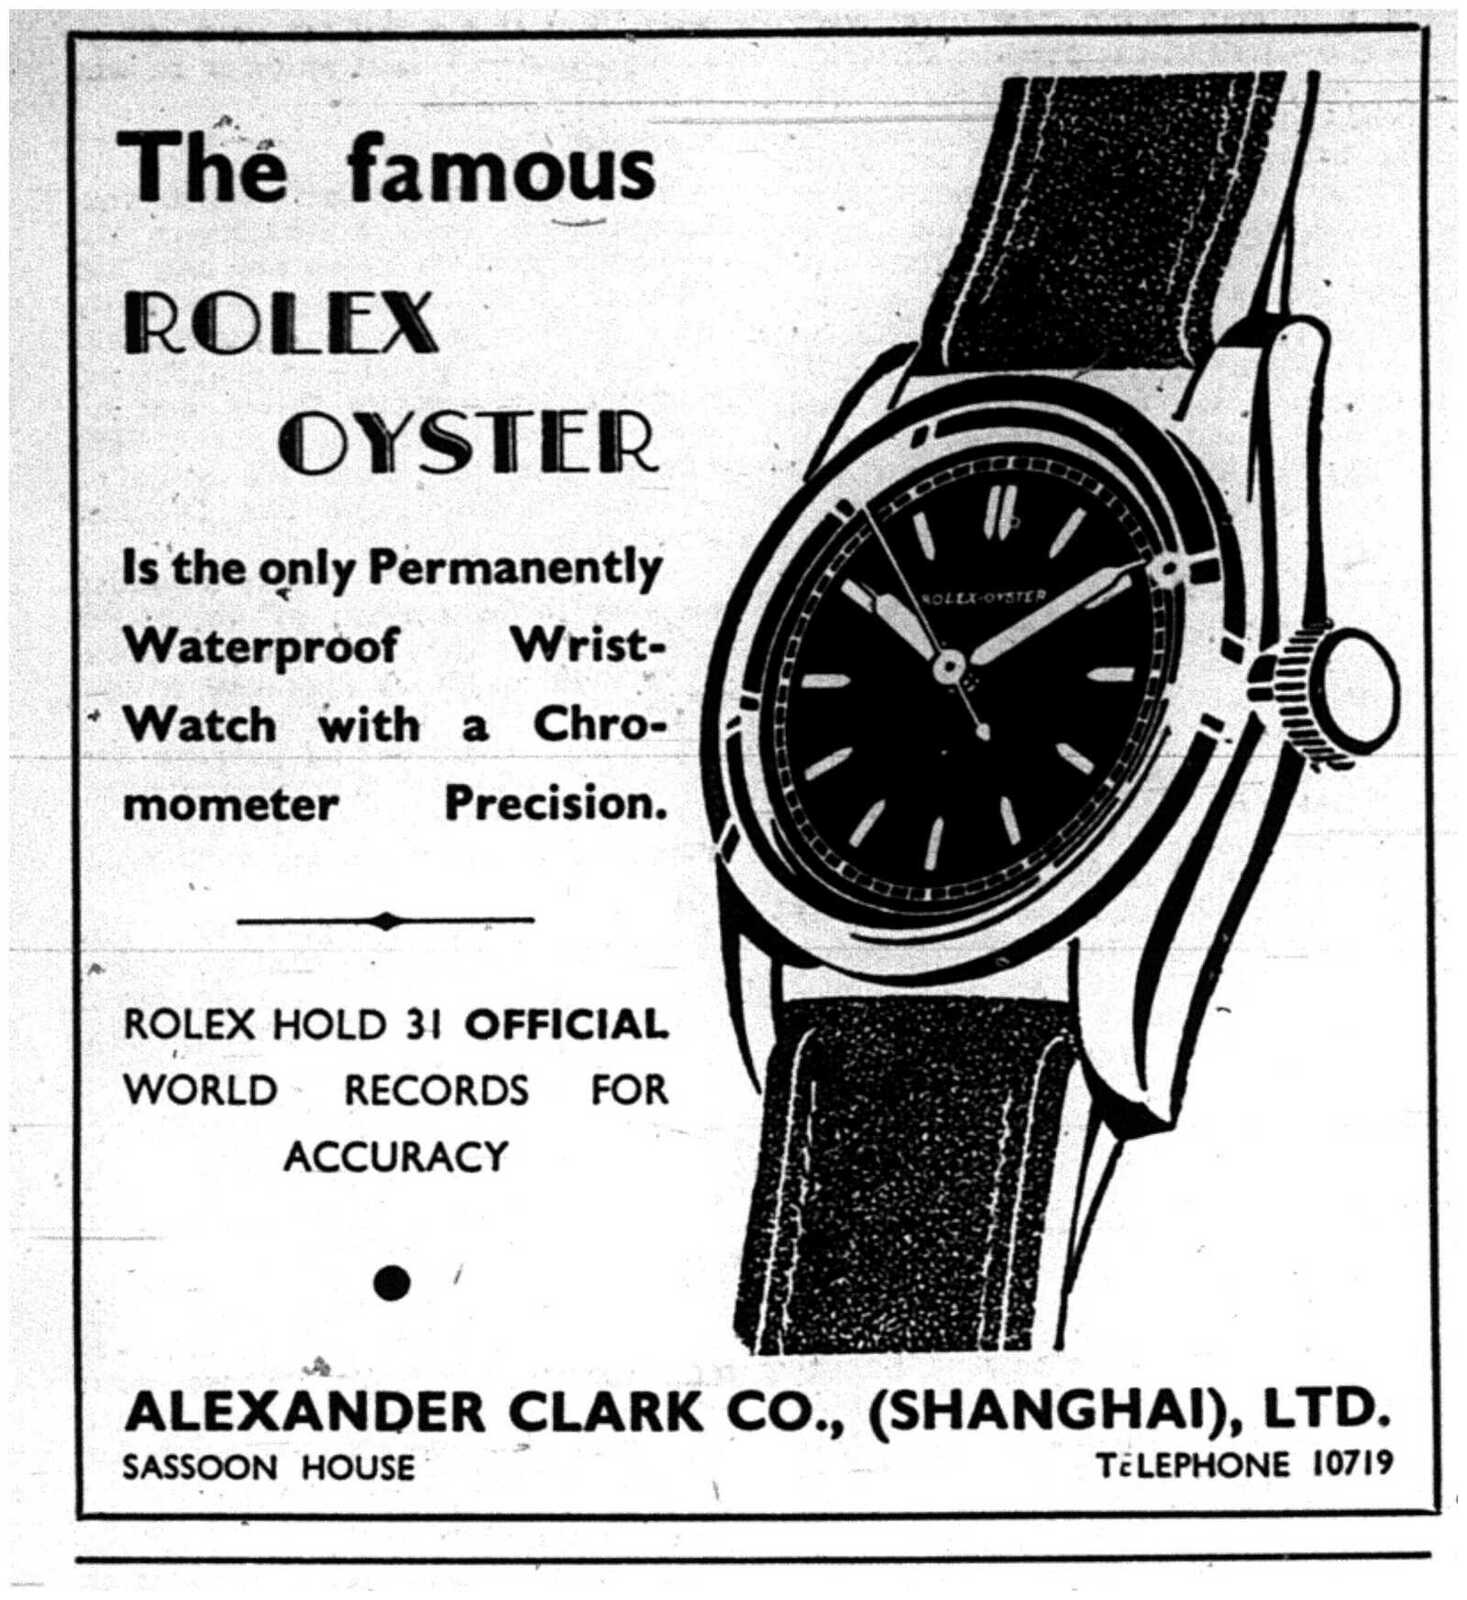 Rolex-Oyster-ad-1941.jpg